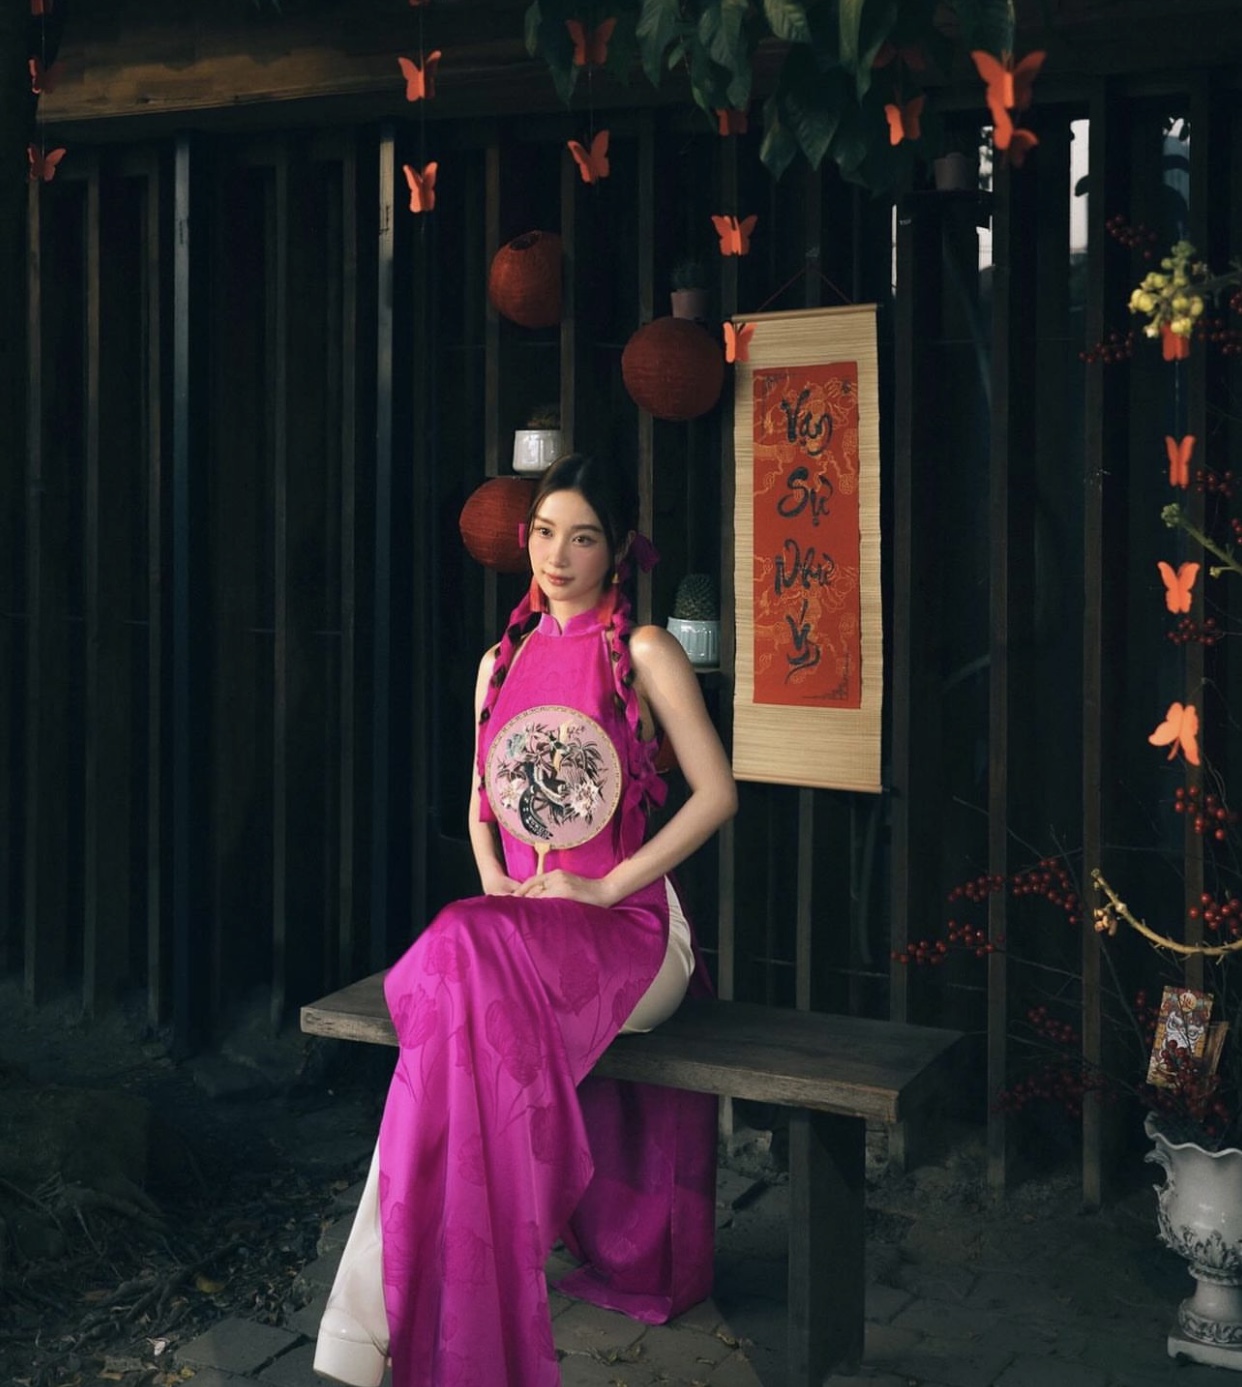 Nữ diễn viên Jun Vu hóa thân thành quý cô gợi cảm và cổ điển trong thiết kế áo dài cổ yếm màu hồng nổi bật. Kiểu trang điểm 